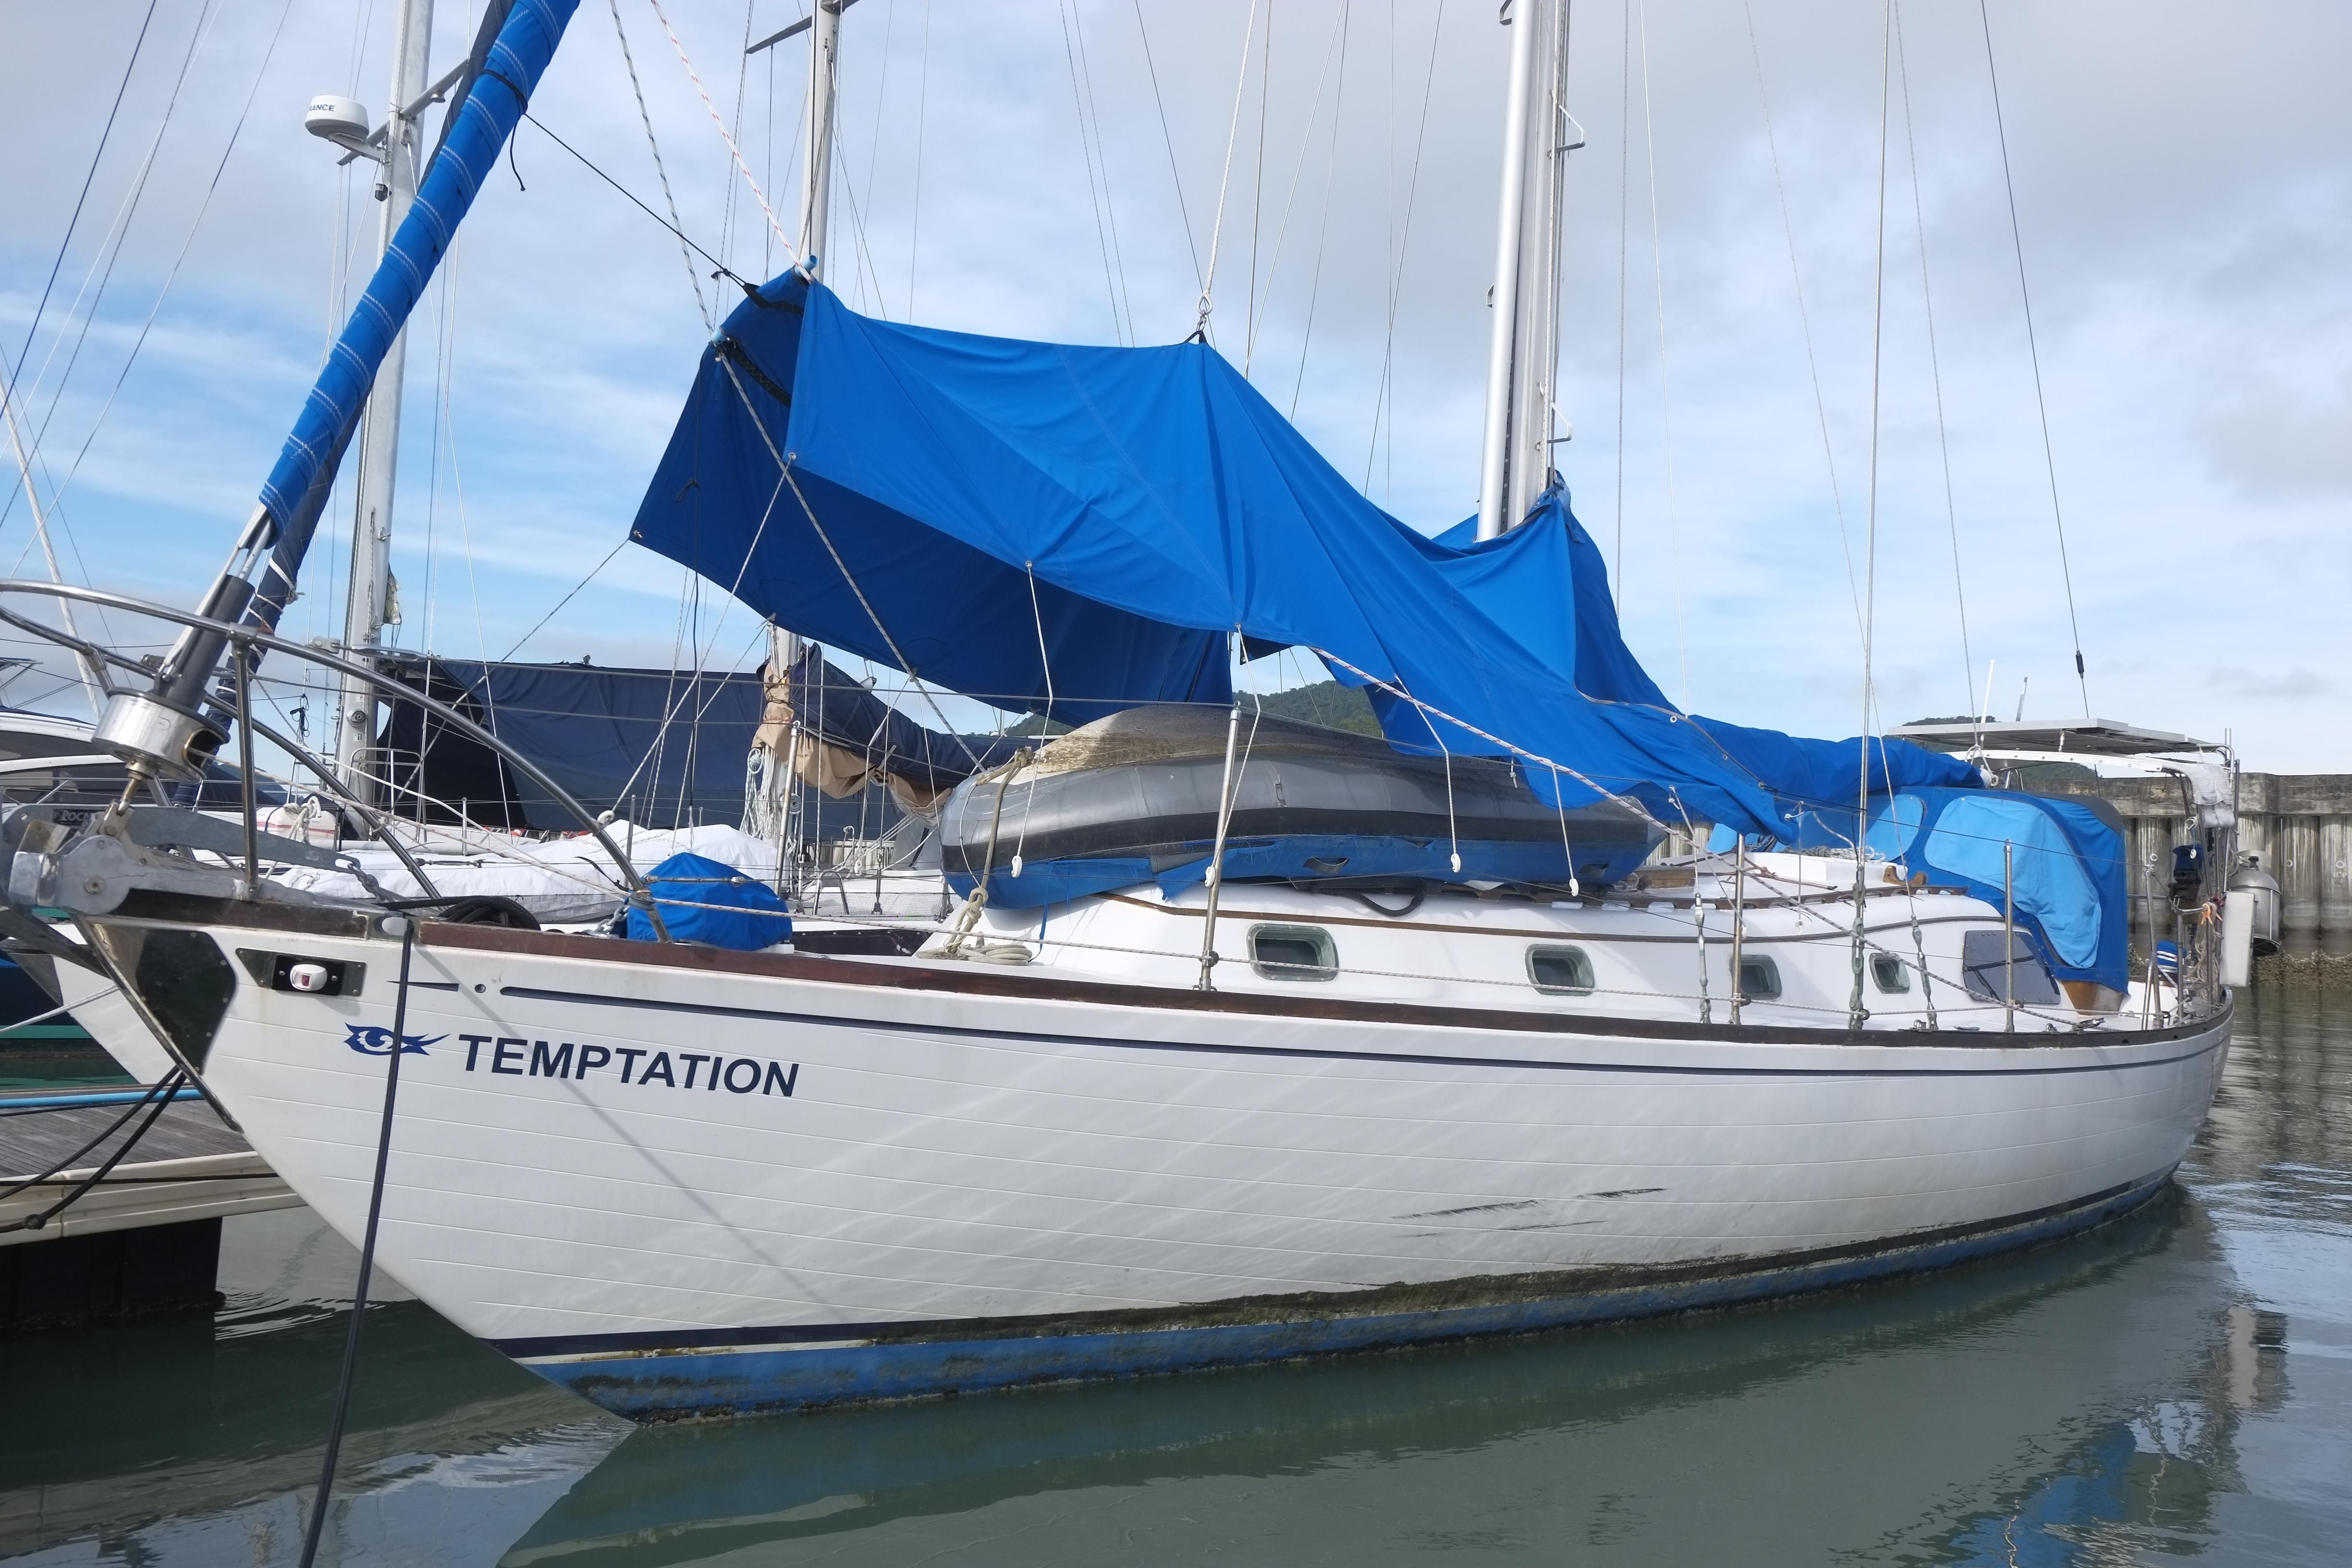 islander 44 sailboat for sale